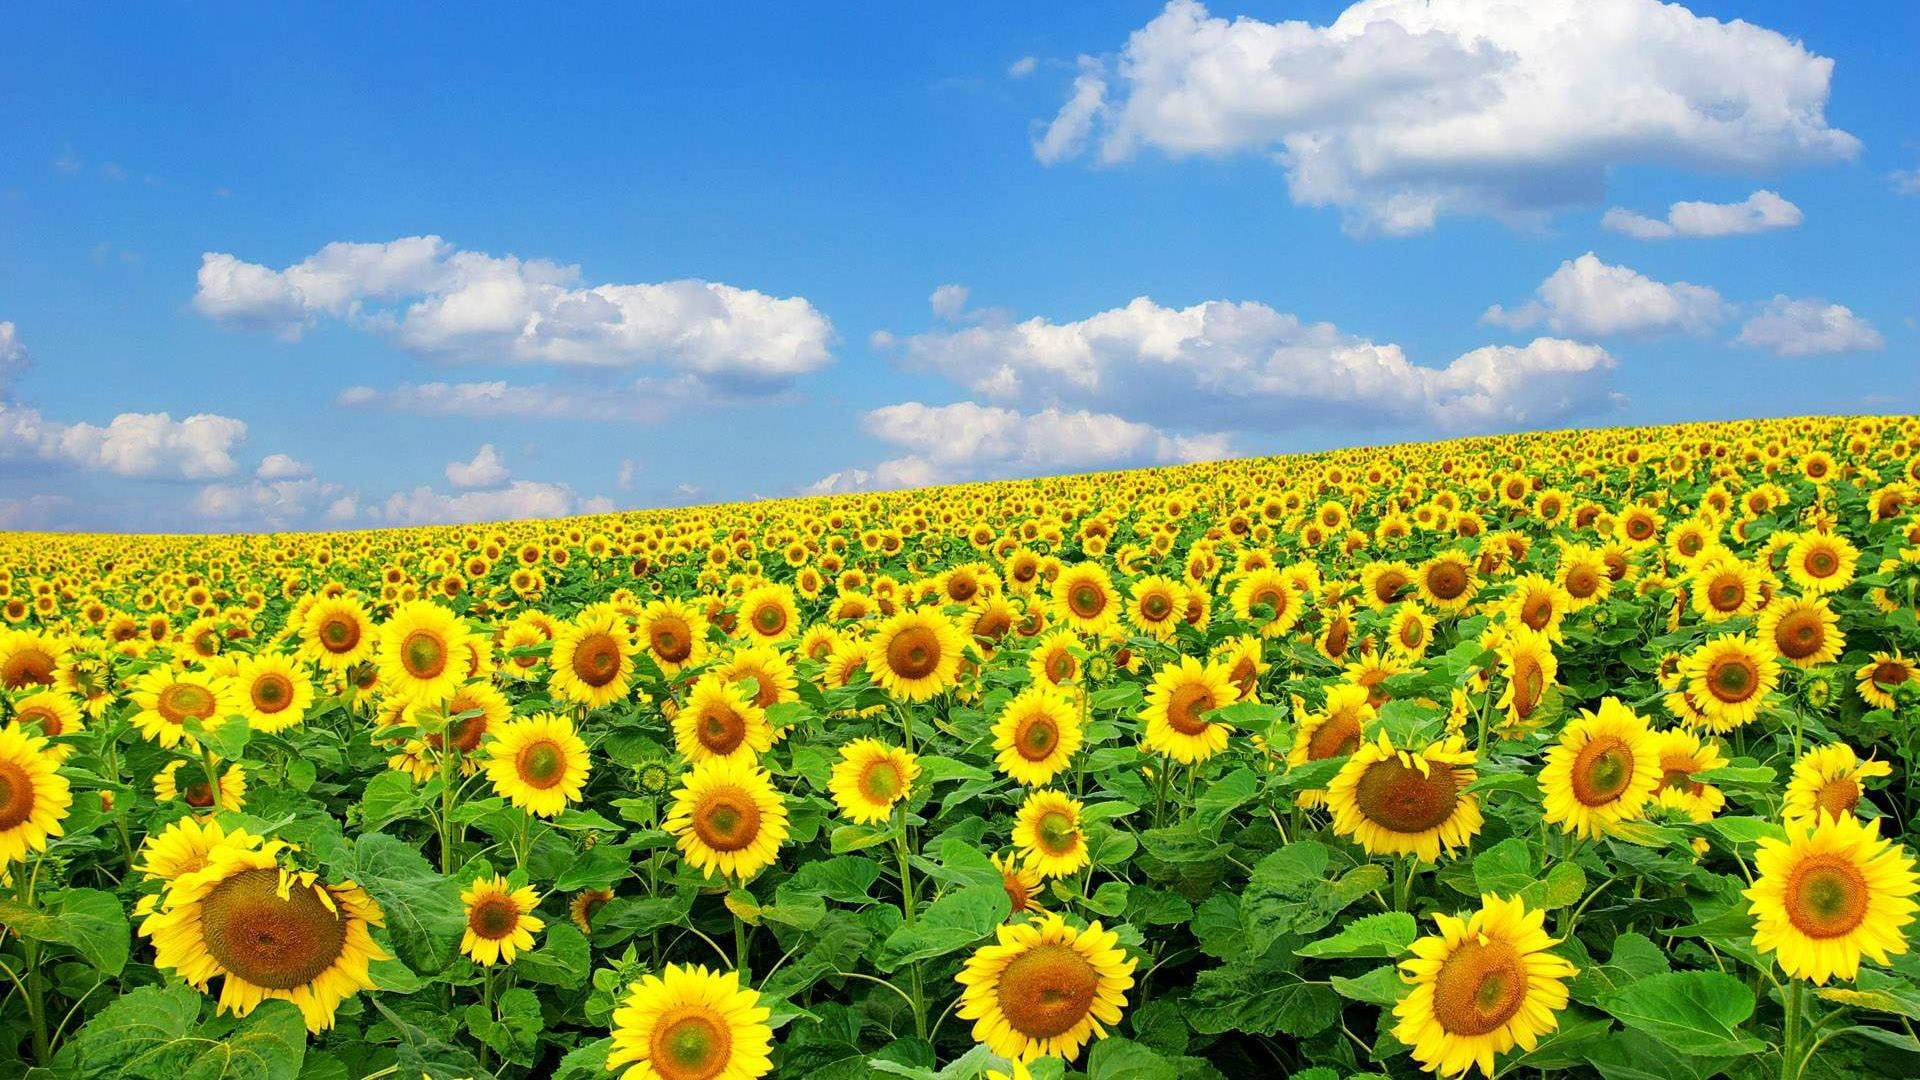 Sunflower Field In Spring Season